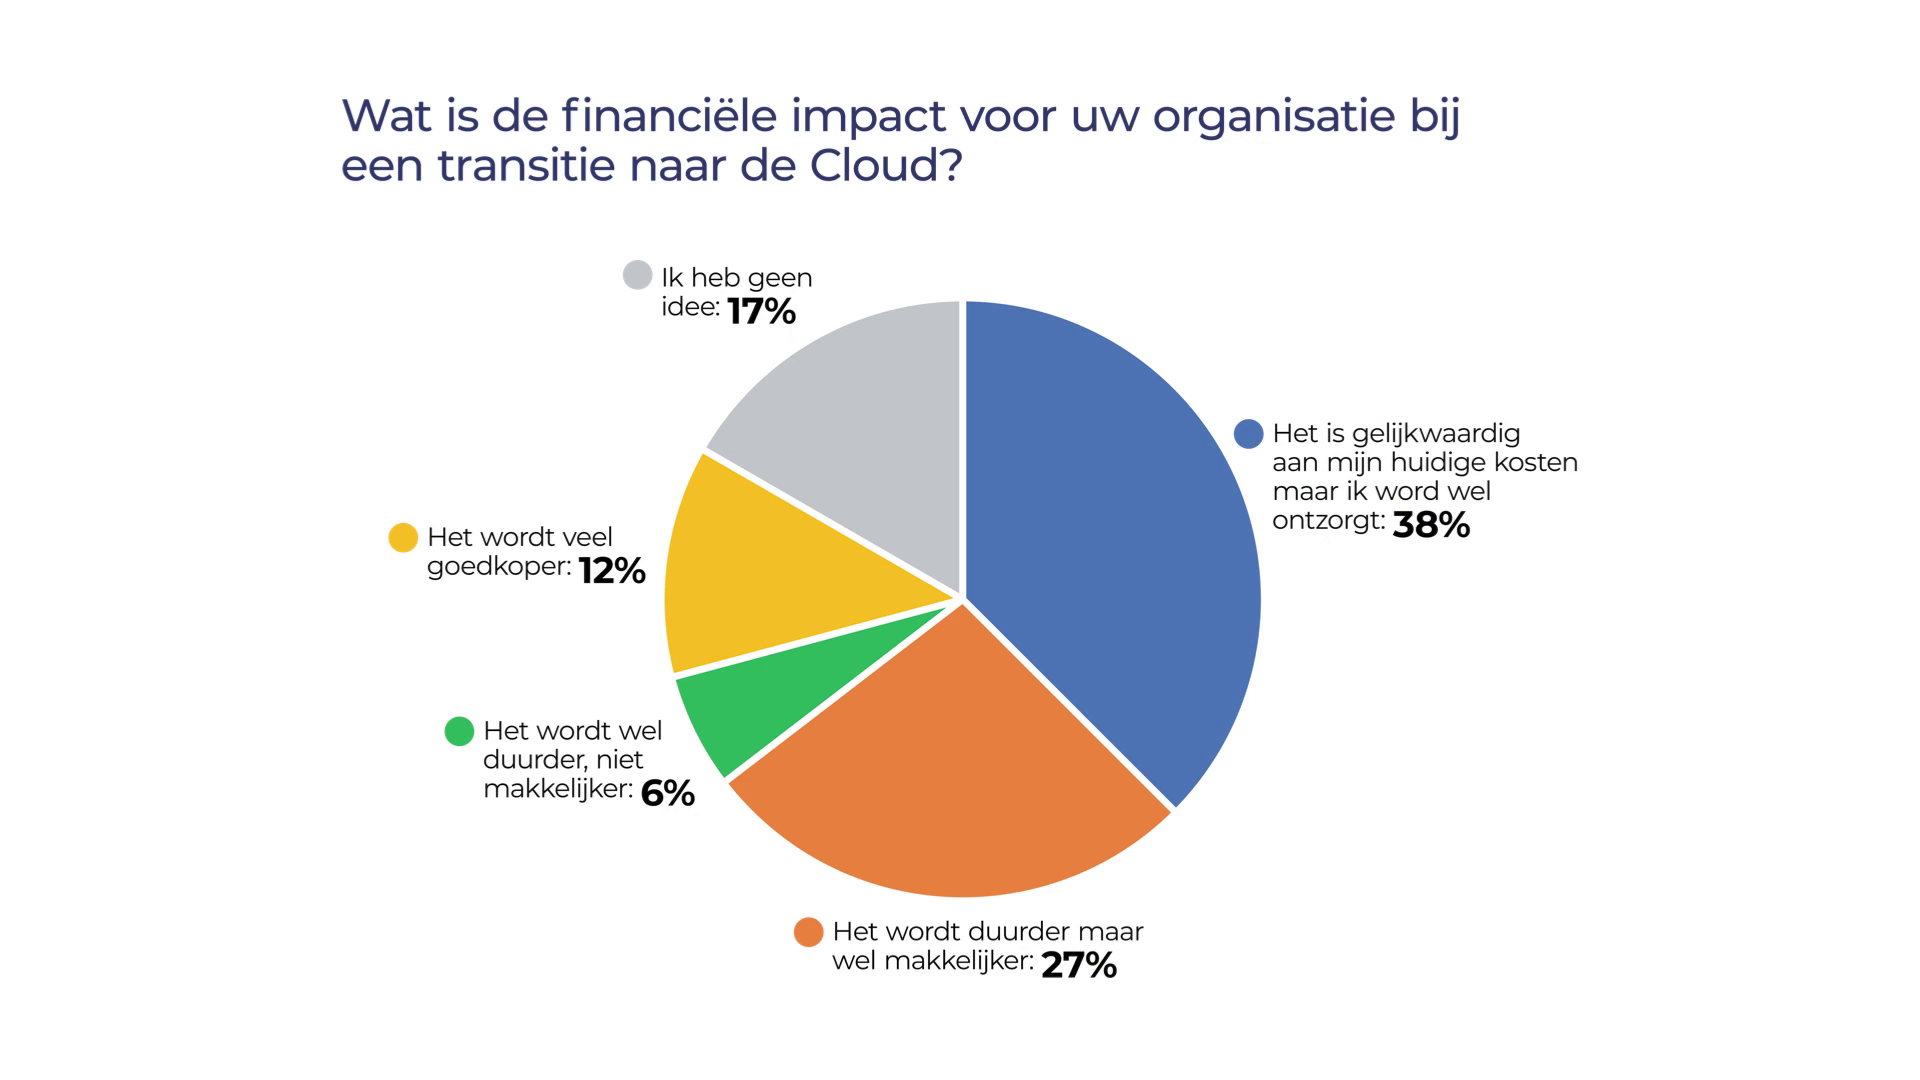 Vraag: Wat is de financiele impact voor uw organisatie bij een transitie naar de Cloud? 